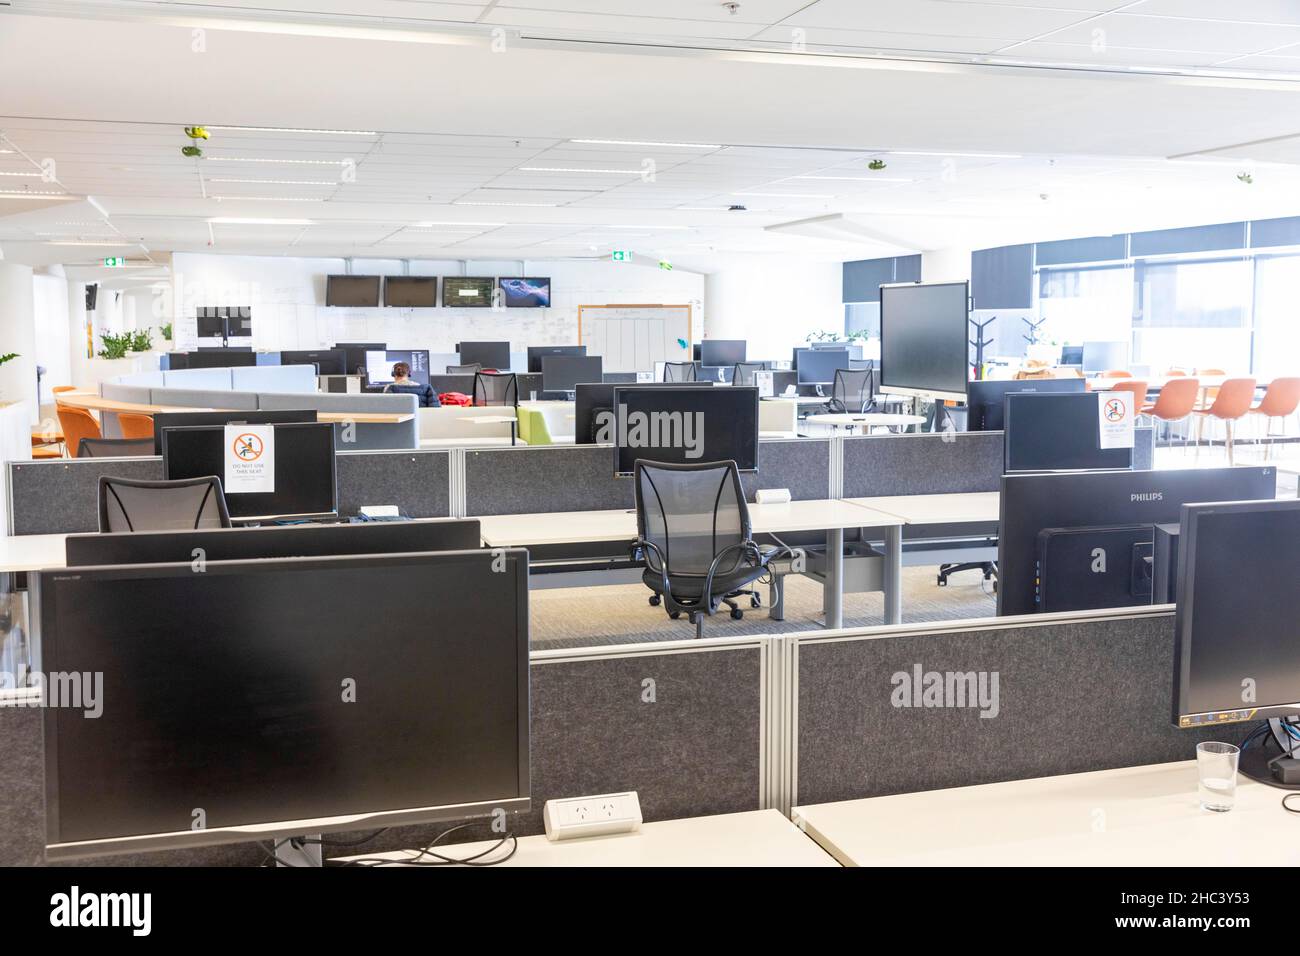 Covid 19 impact, bureaux d'entreprise vides comme le personnel a dit de travailler à domicile pendant une pandémie, bâtiment de bureaux de Sydney, Australie Banque D'Images